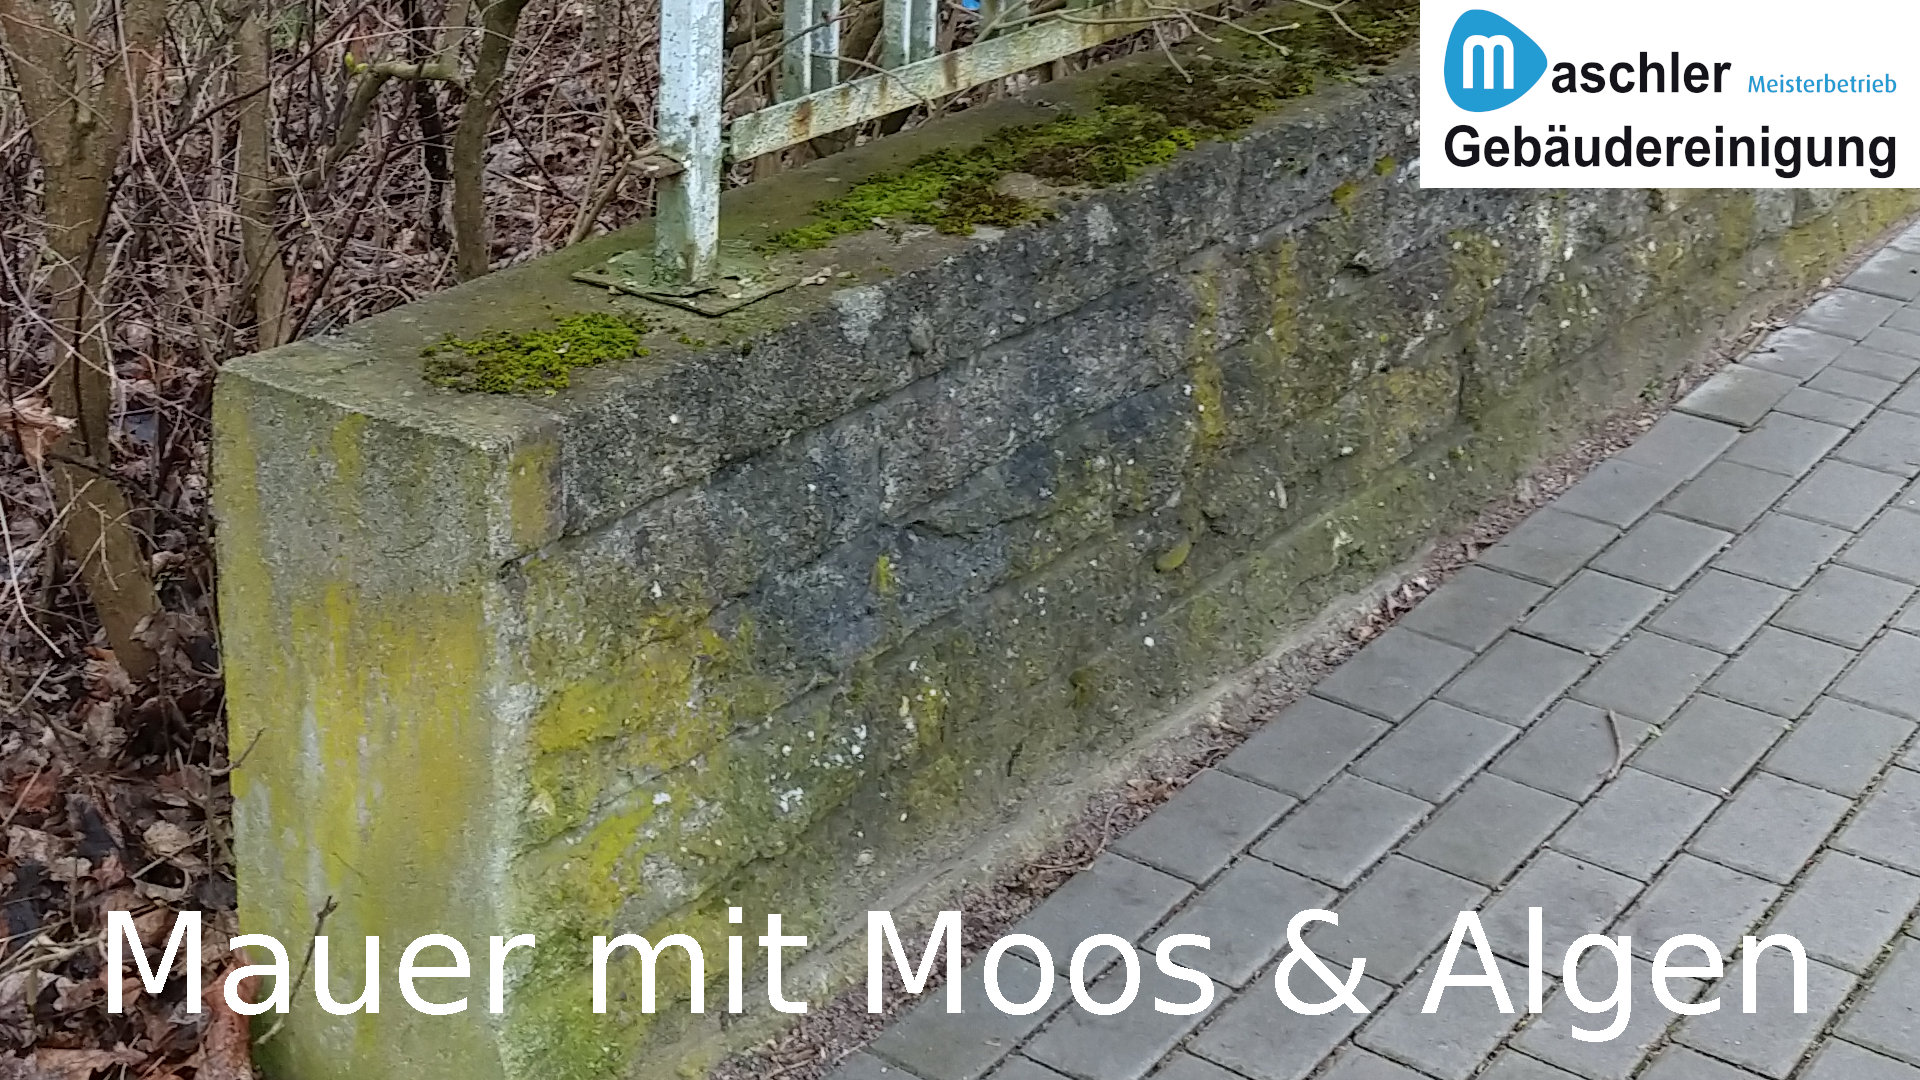 Mauer mit Moos - Gebäudereinigung Maschler GmbH